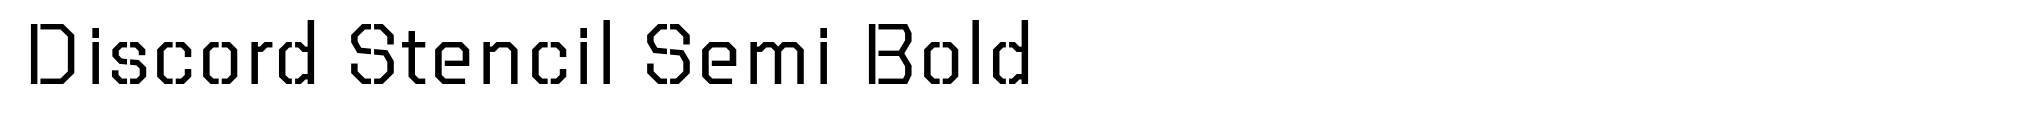 Discord Stencil Semi Bold image